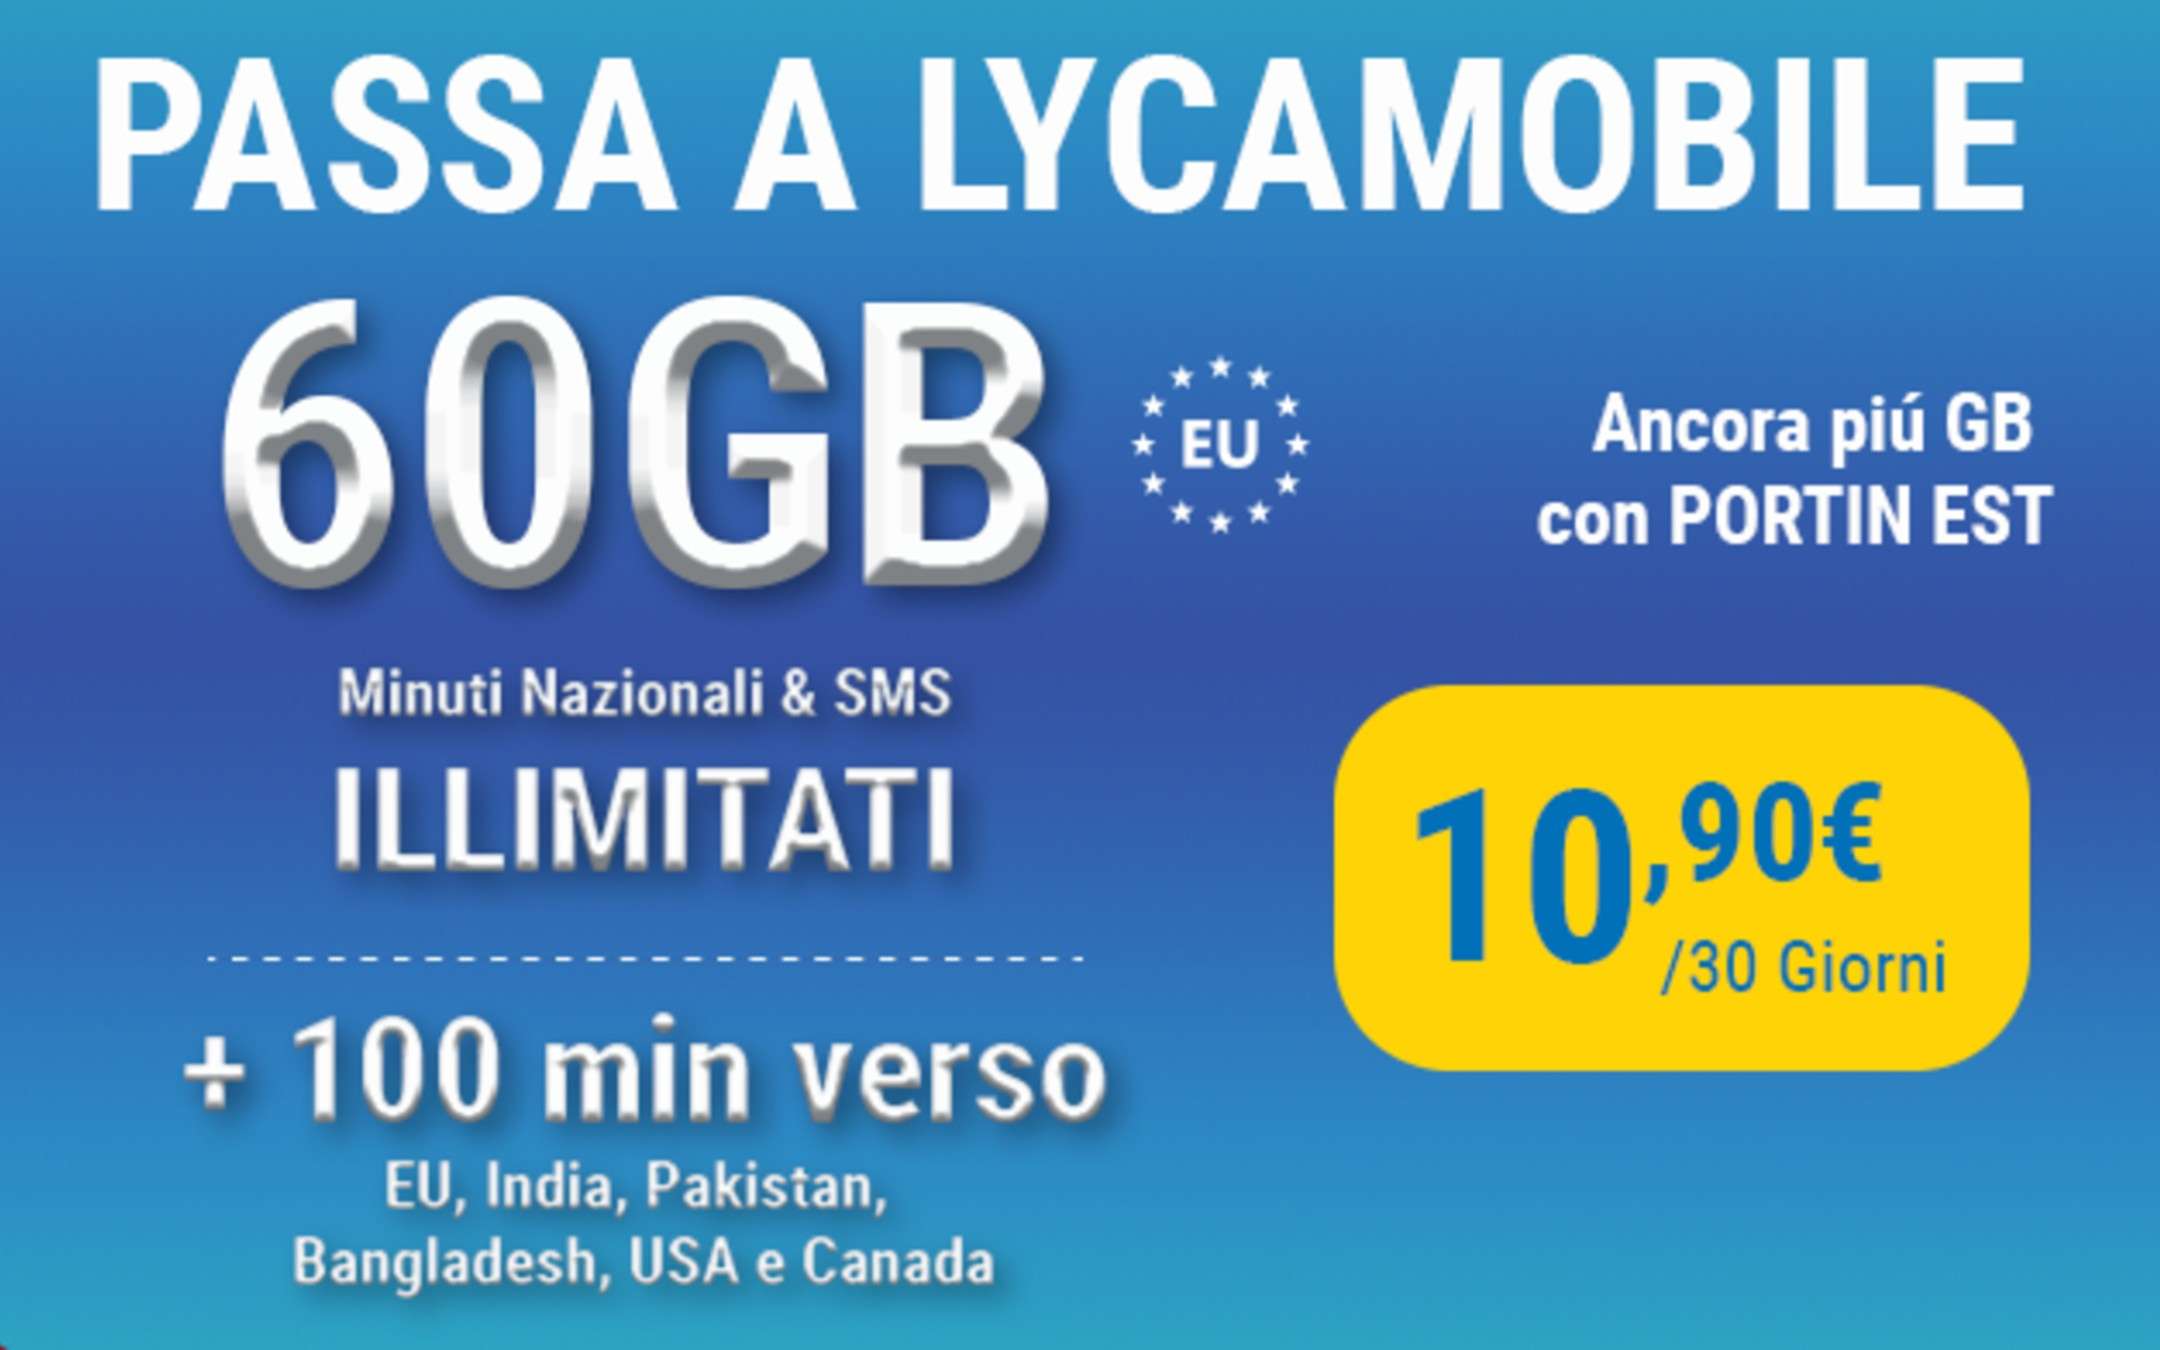 PortIN East: promo Lyca con 60GB a 10,99€ al mese